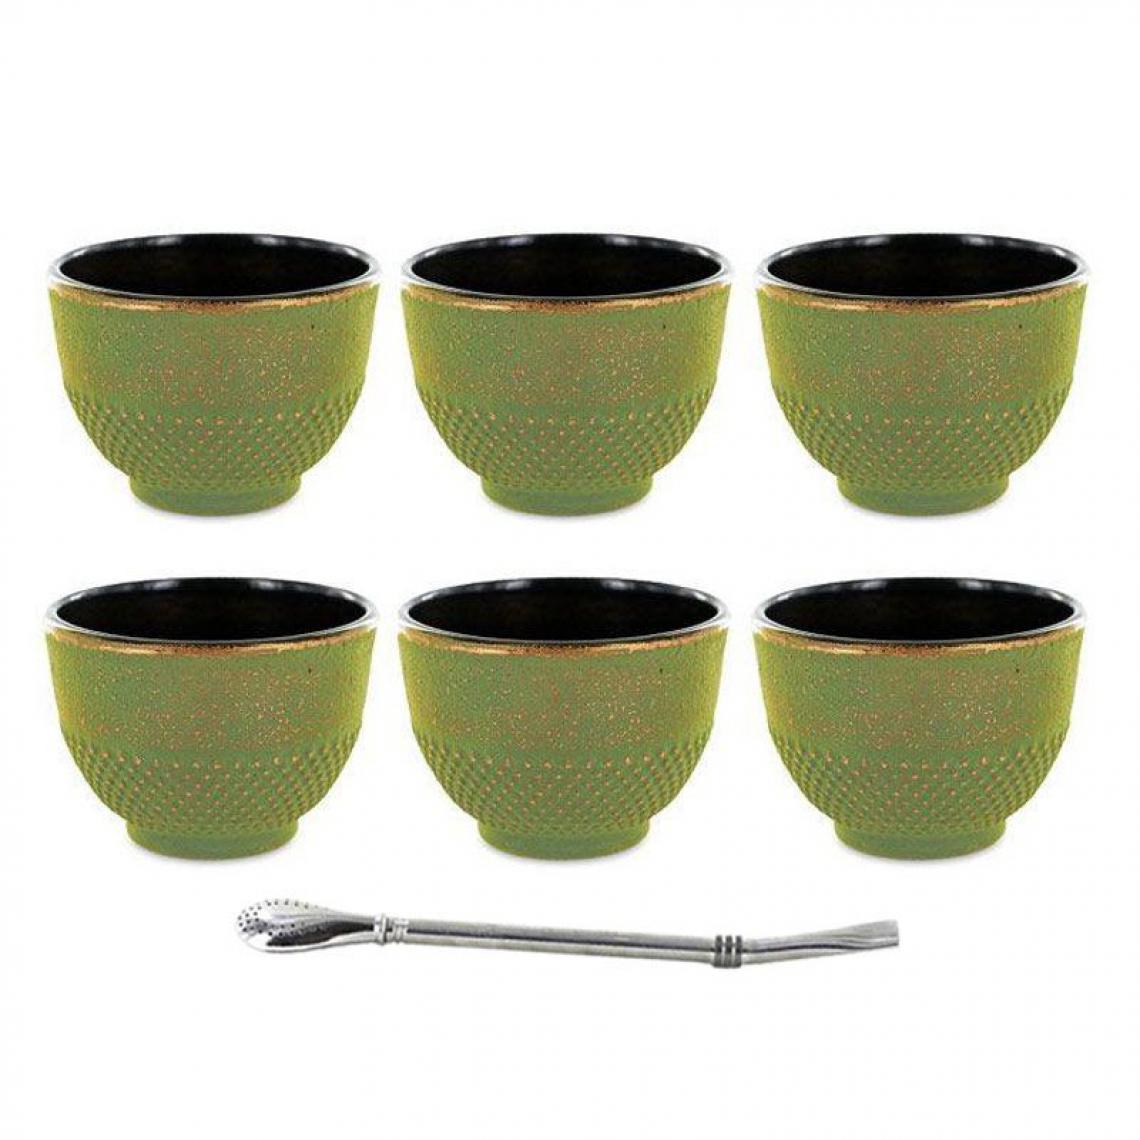 Aromandise - 6 tasses en fonte vertes 15 cl + paille inox avec filtre - Kits créatifs